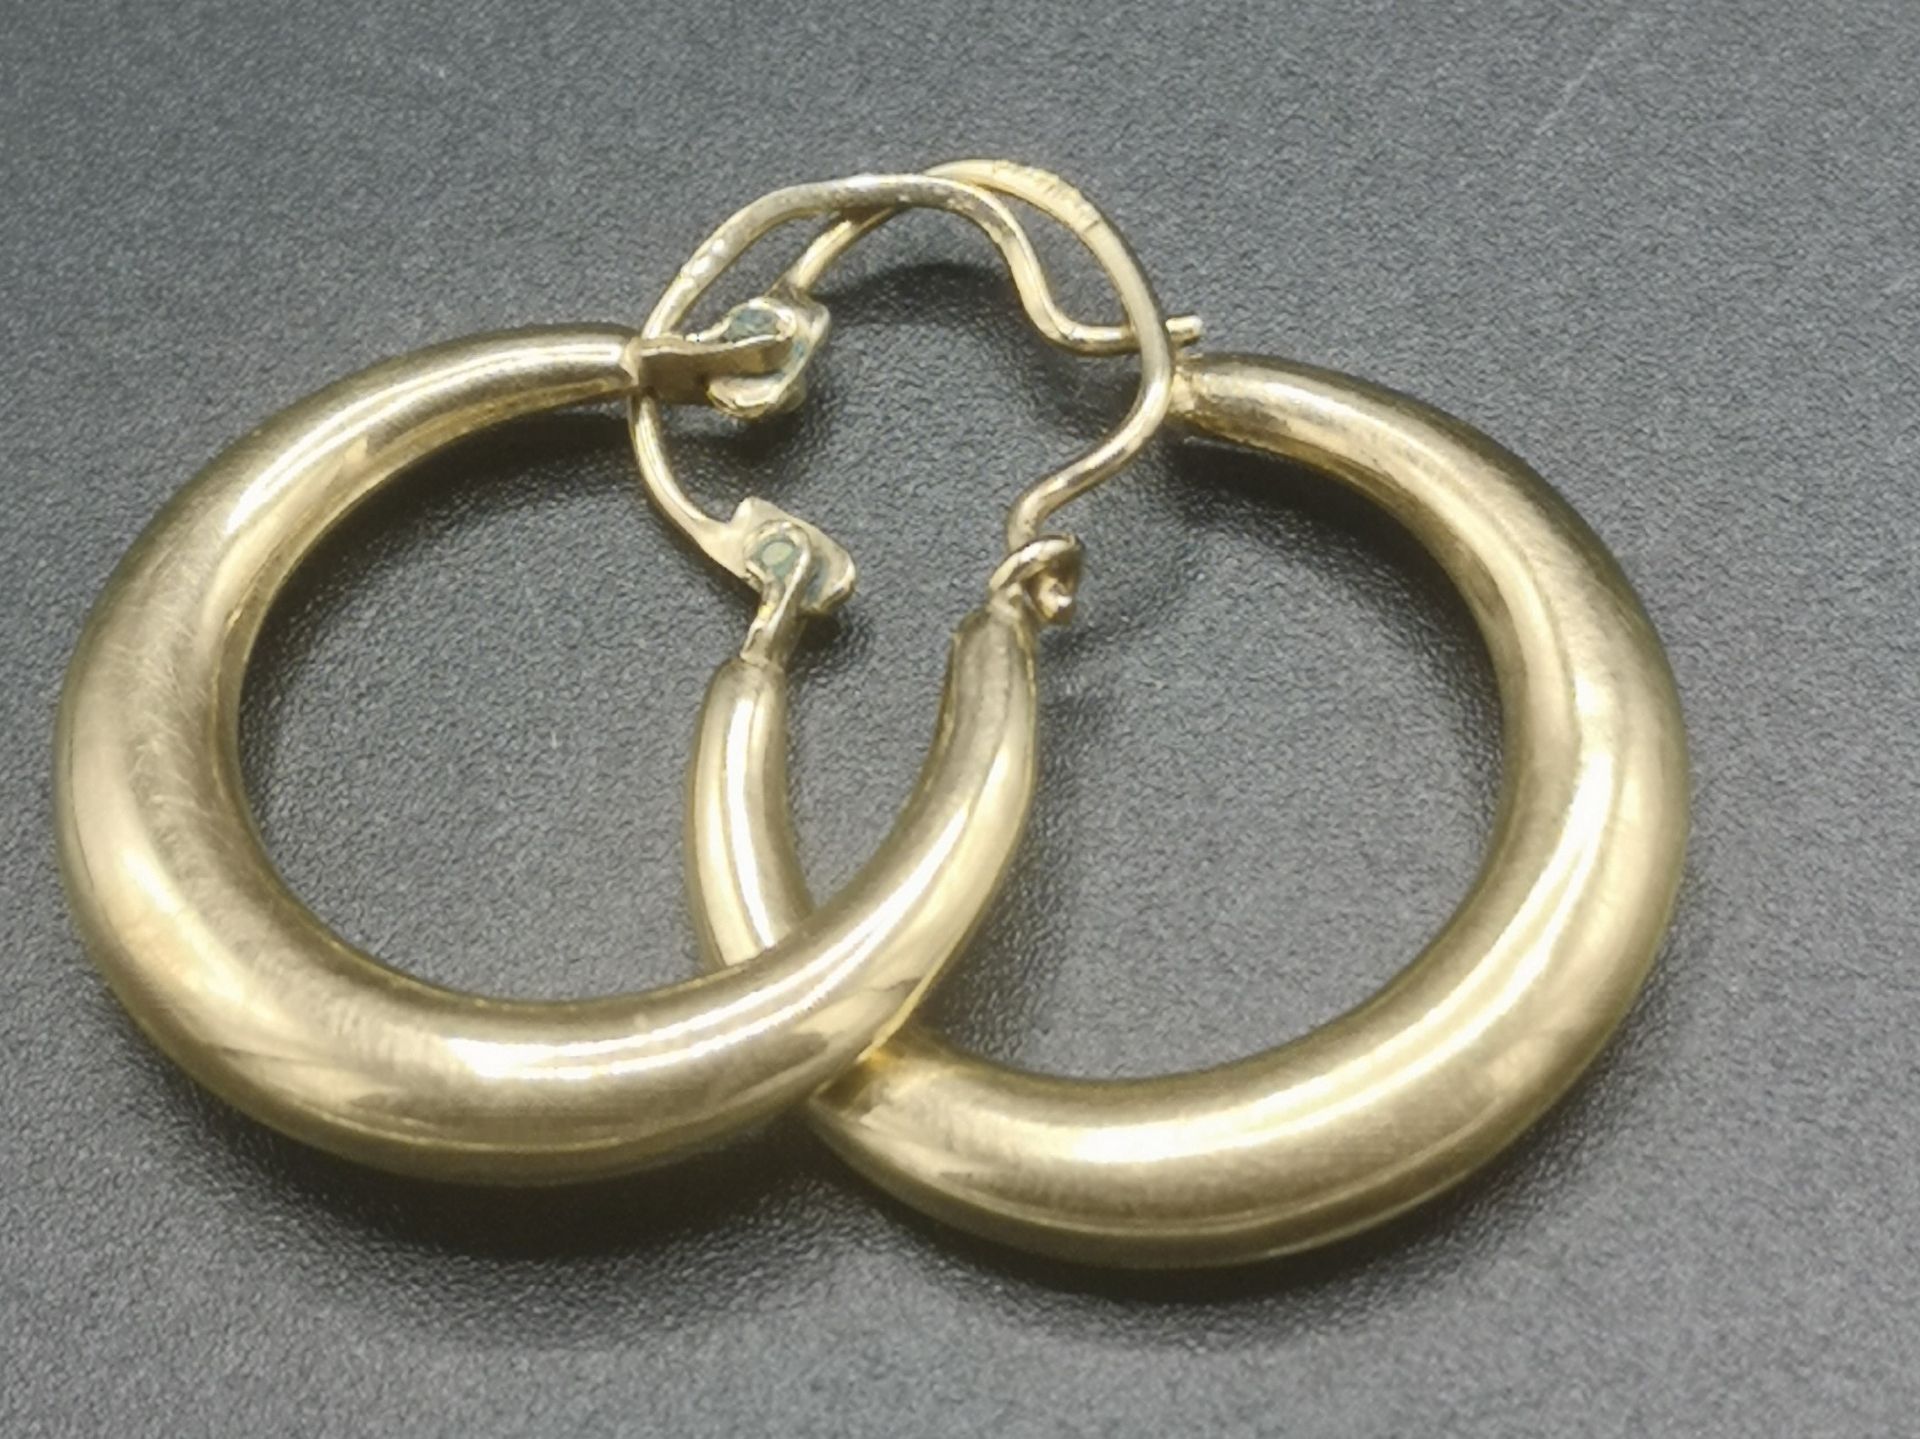 Pir of 9ct gold earrings - Image 2 of 4